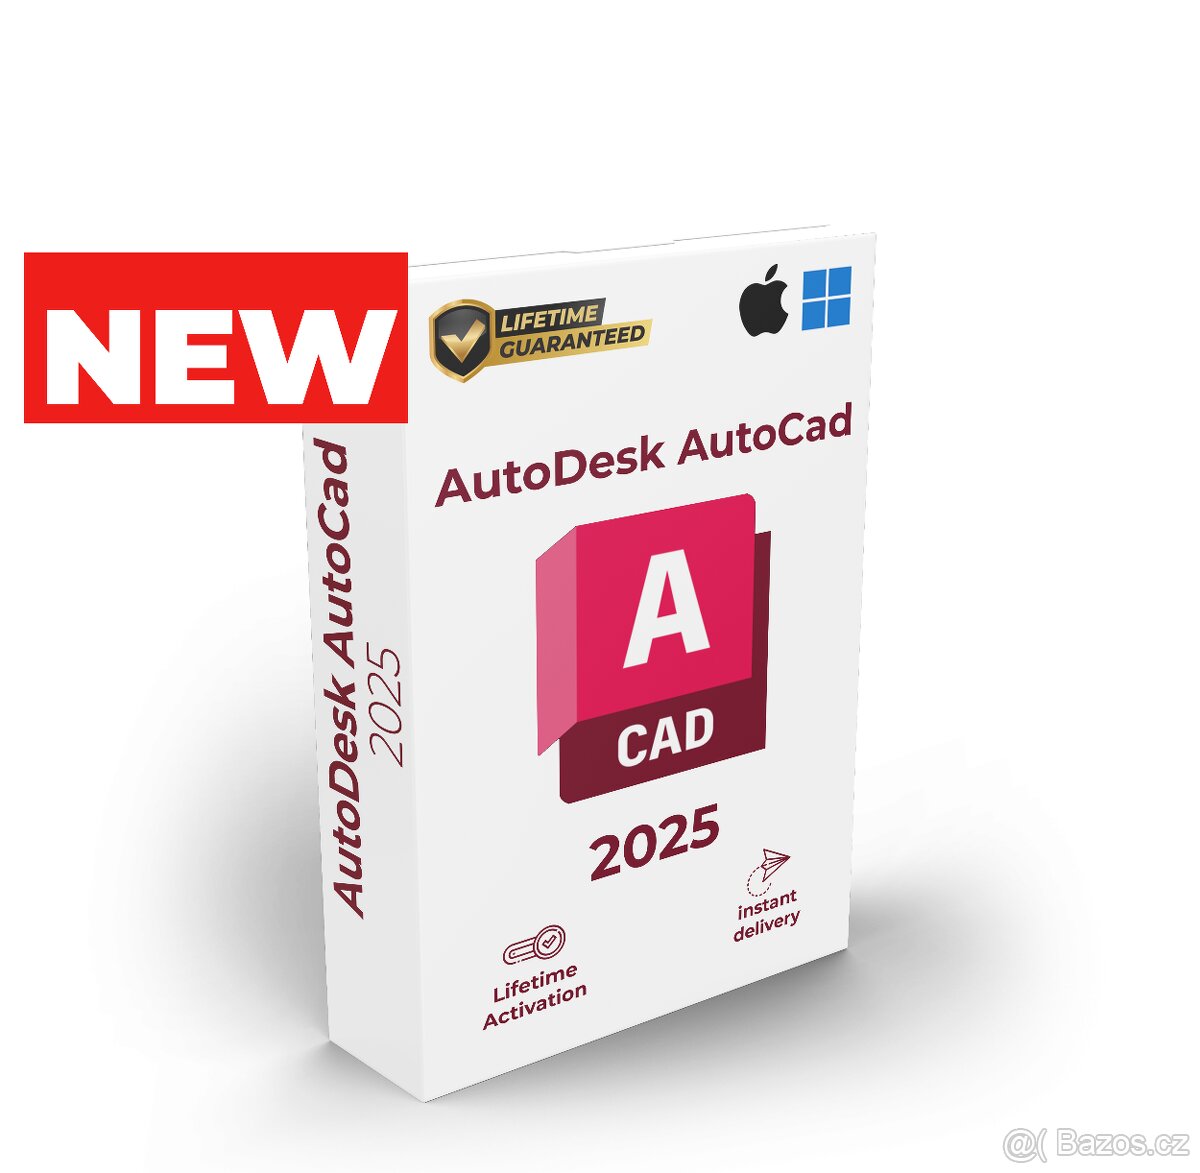 Autodesk Autocad 2025